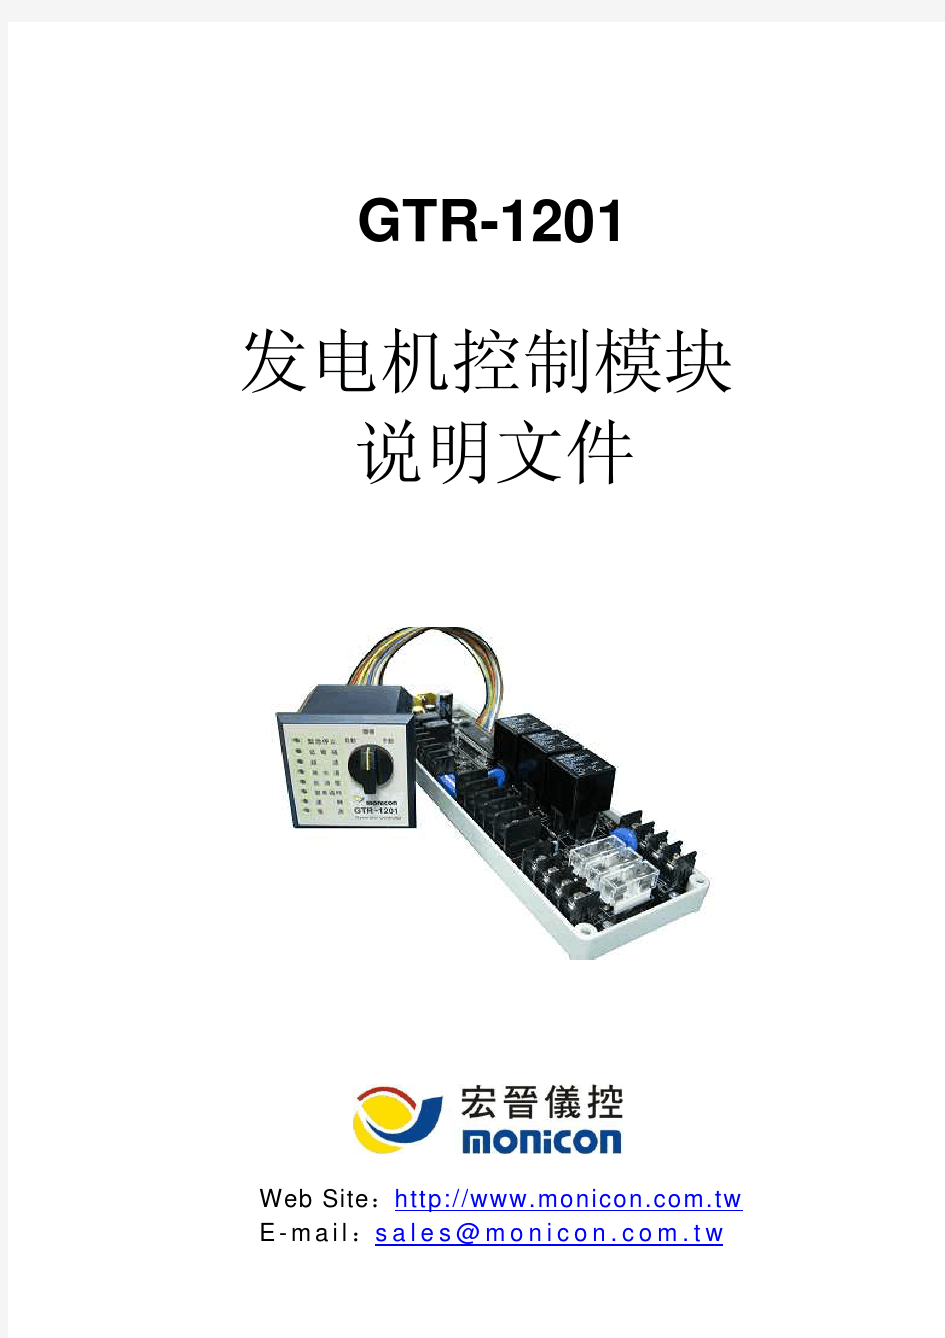 GTR-1201控制器说明书